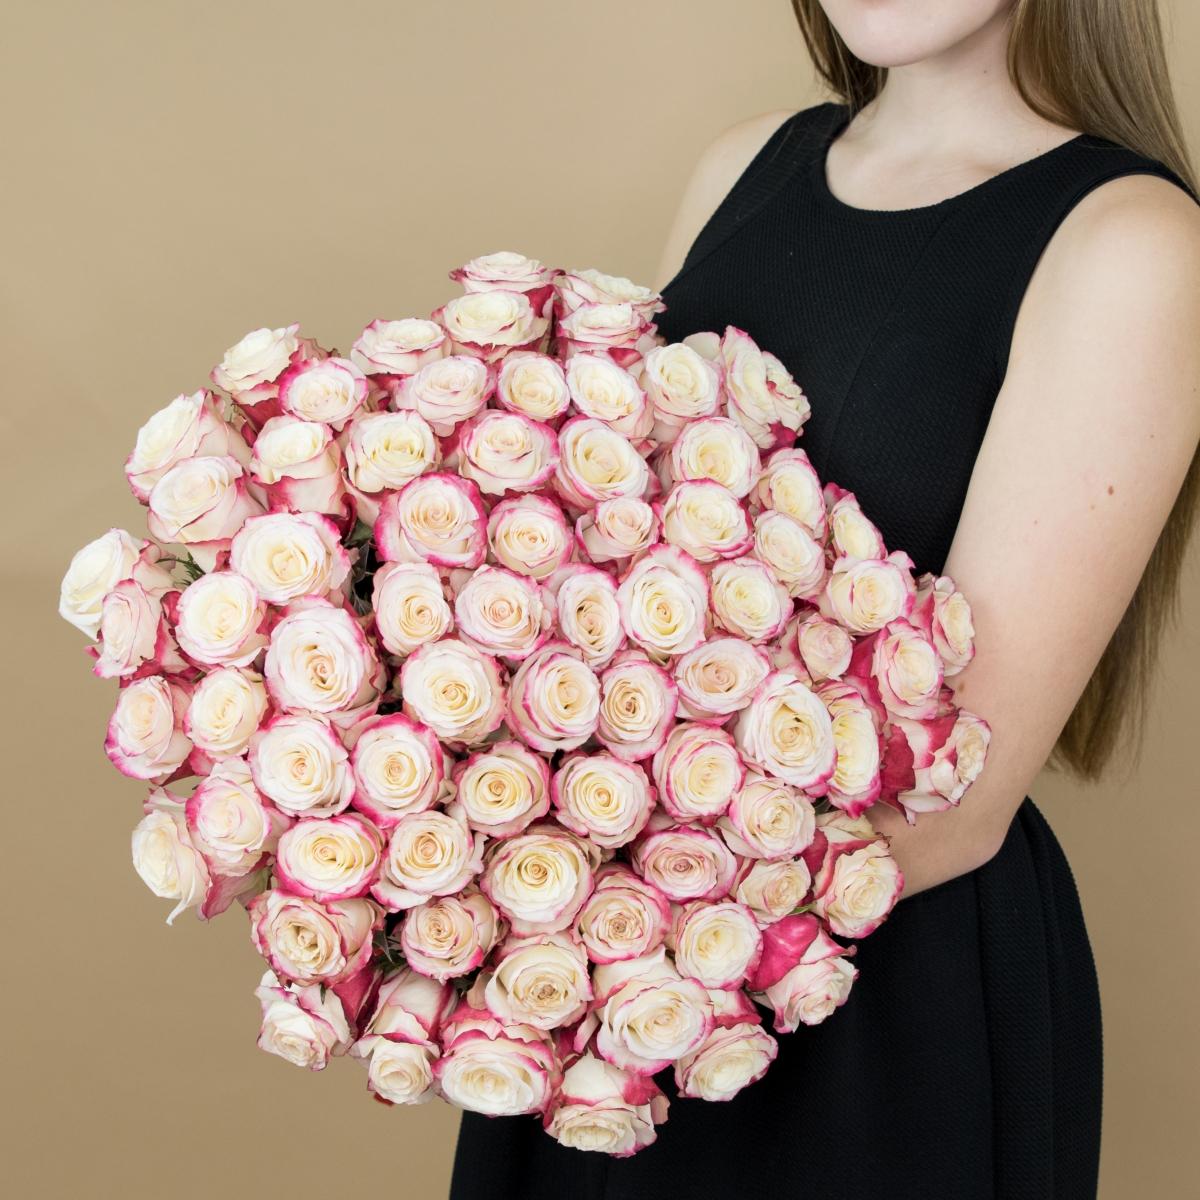 Розы красно-белые 101 шт. (40 см) (код  83304)